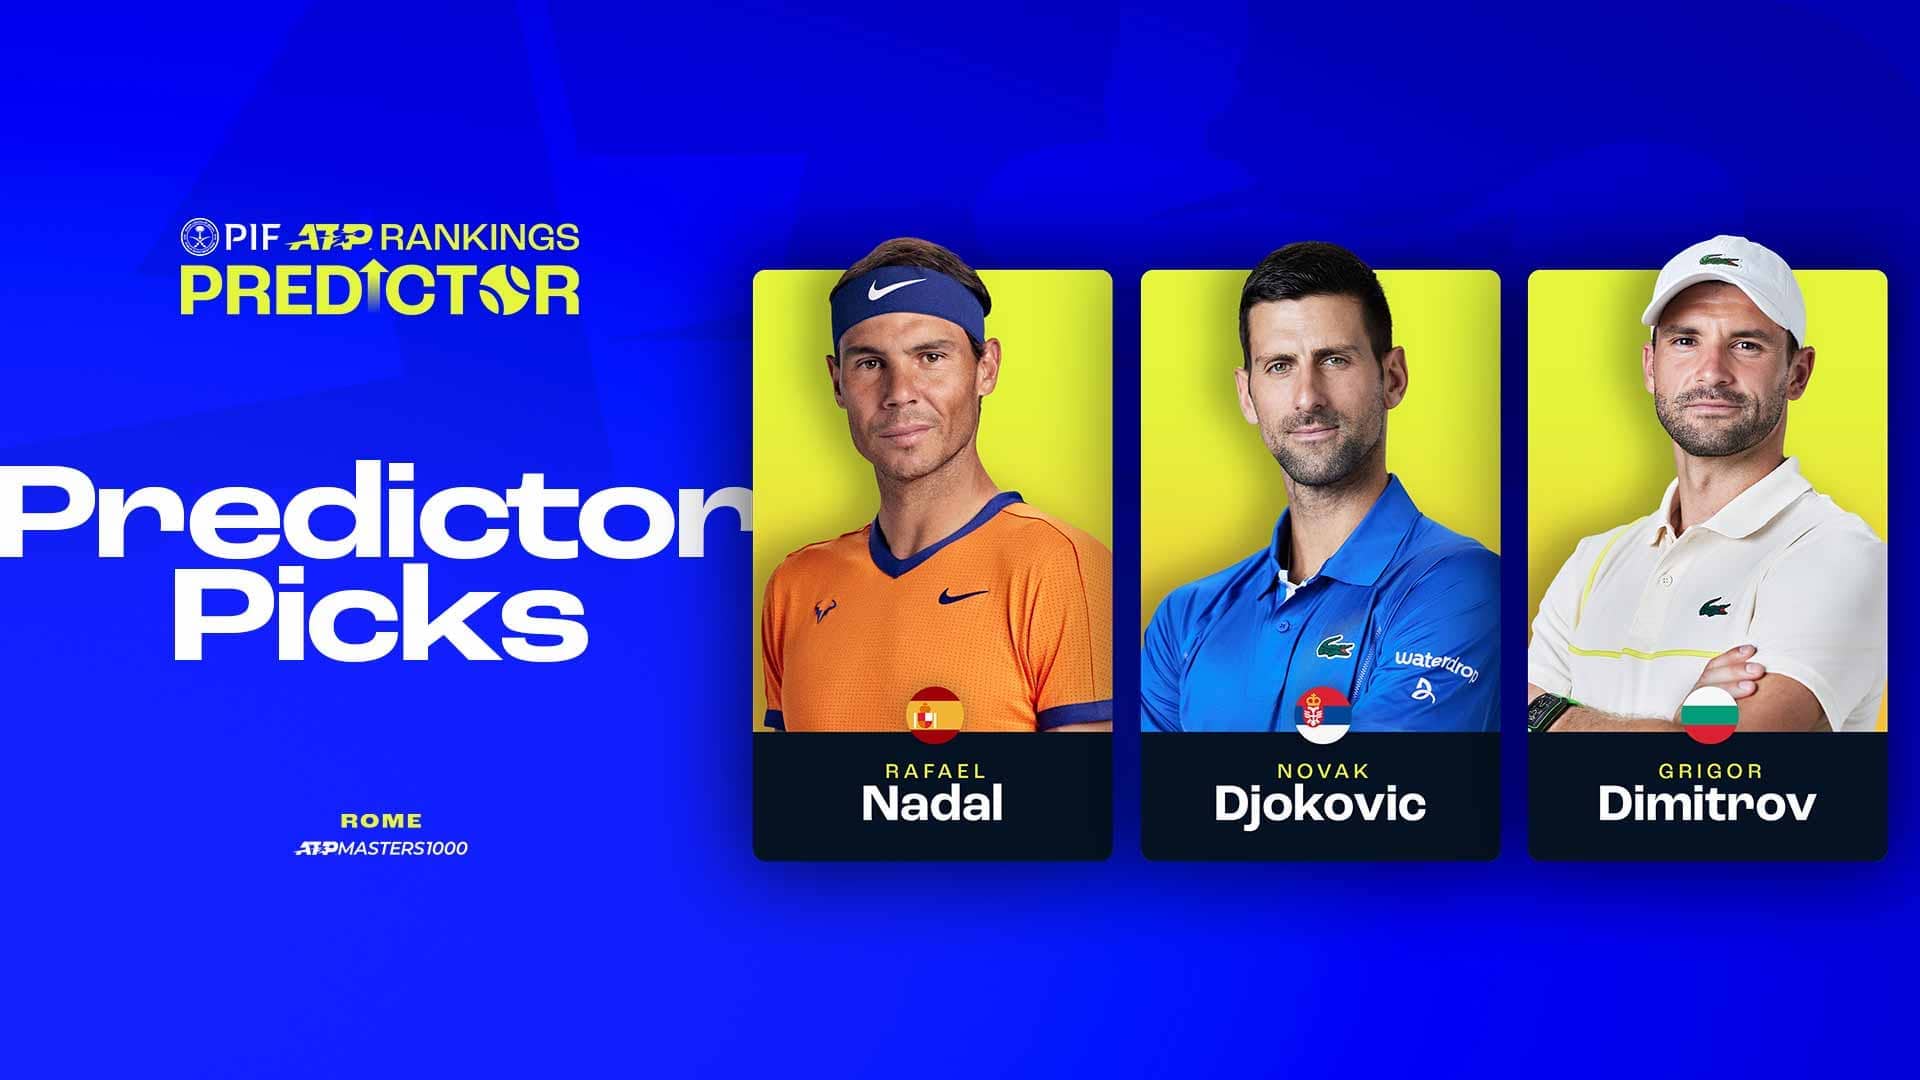 Predictor del ranking: ¿Por qué Nadal y Djokovic son buenas opciones de cara a Roma?